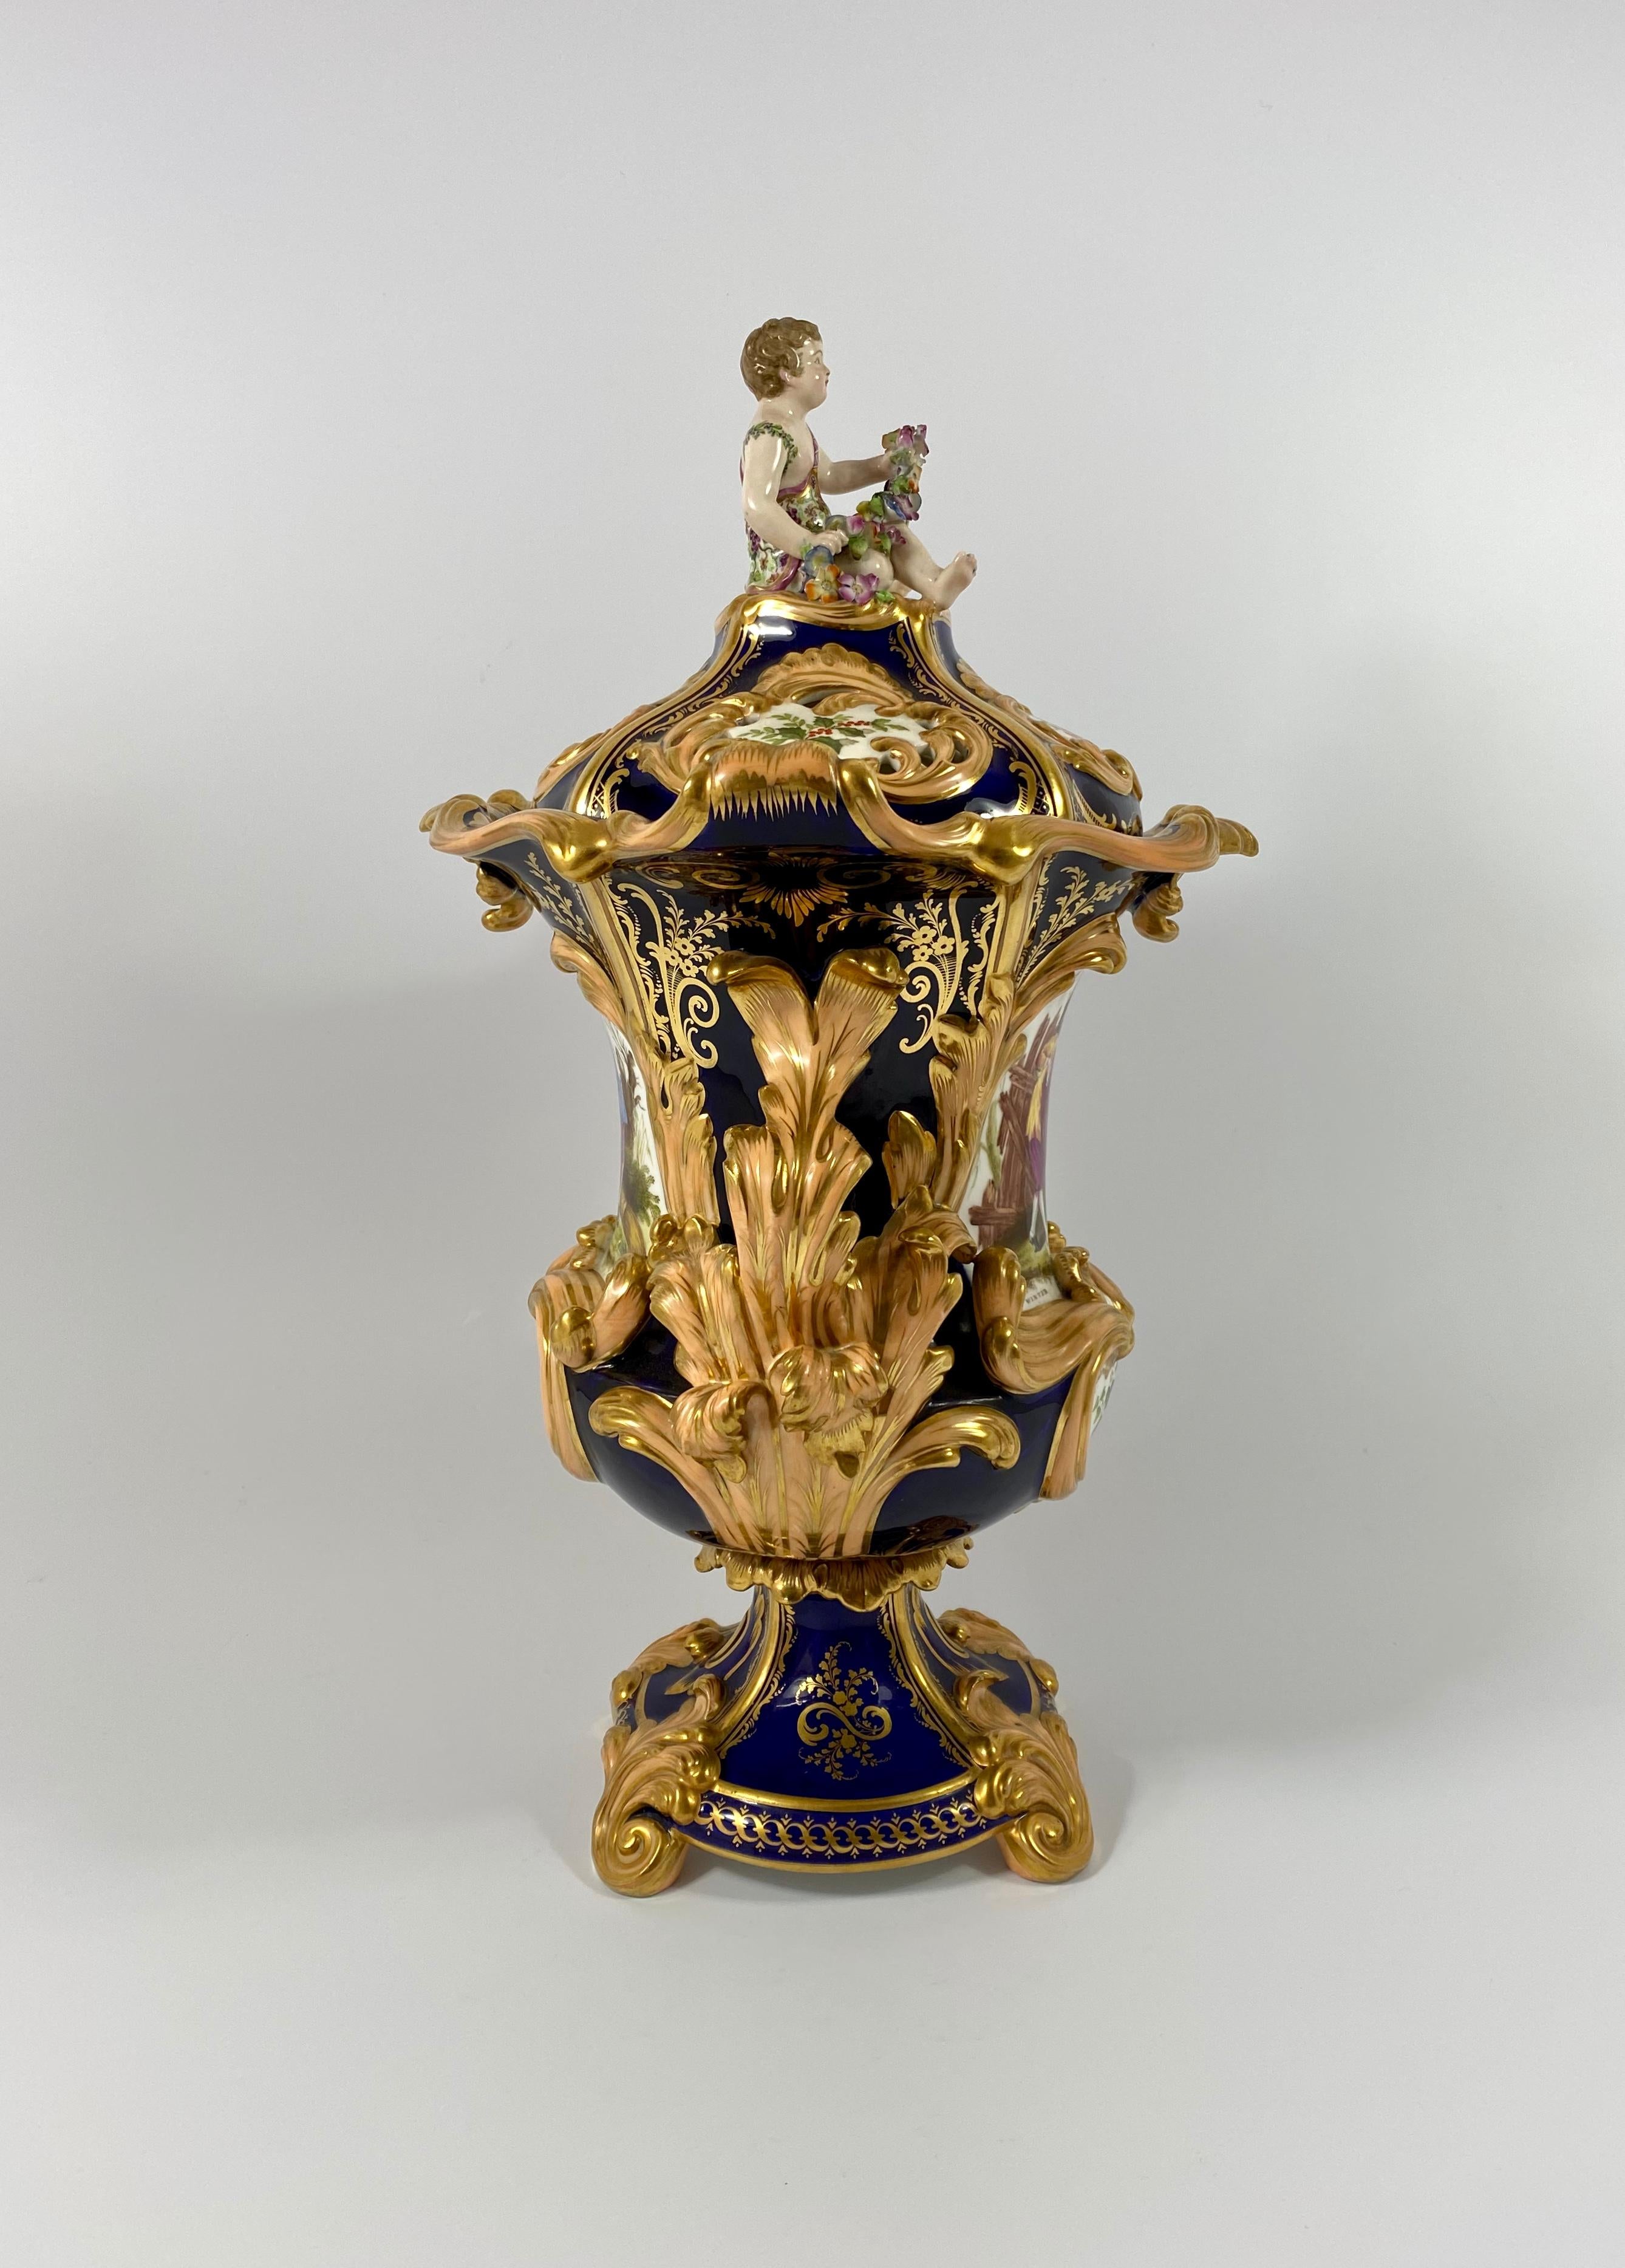 Porcelain Fine pair Minton porcelain vases & covers, ‘Four Seasons’ c. 1830.